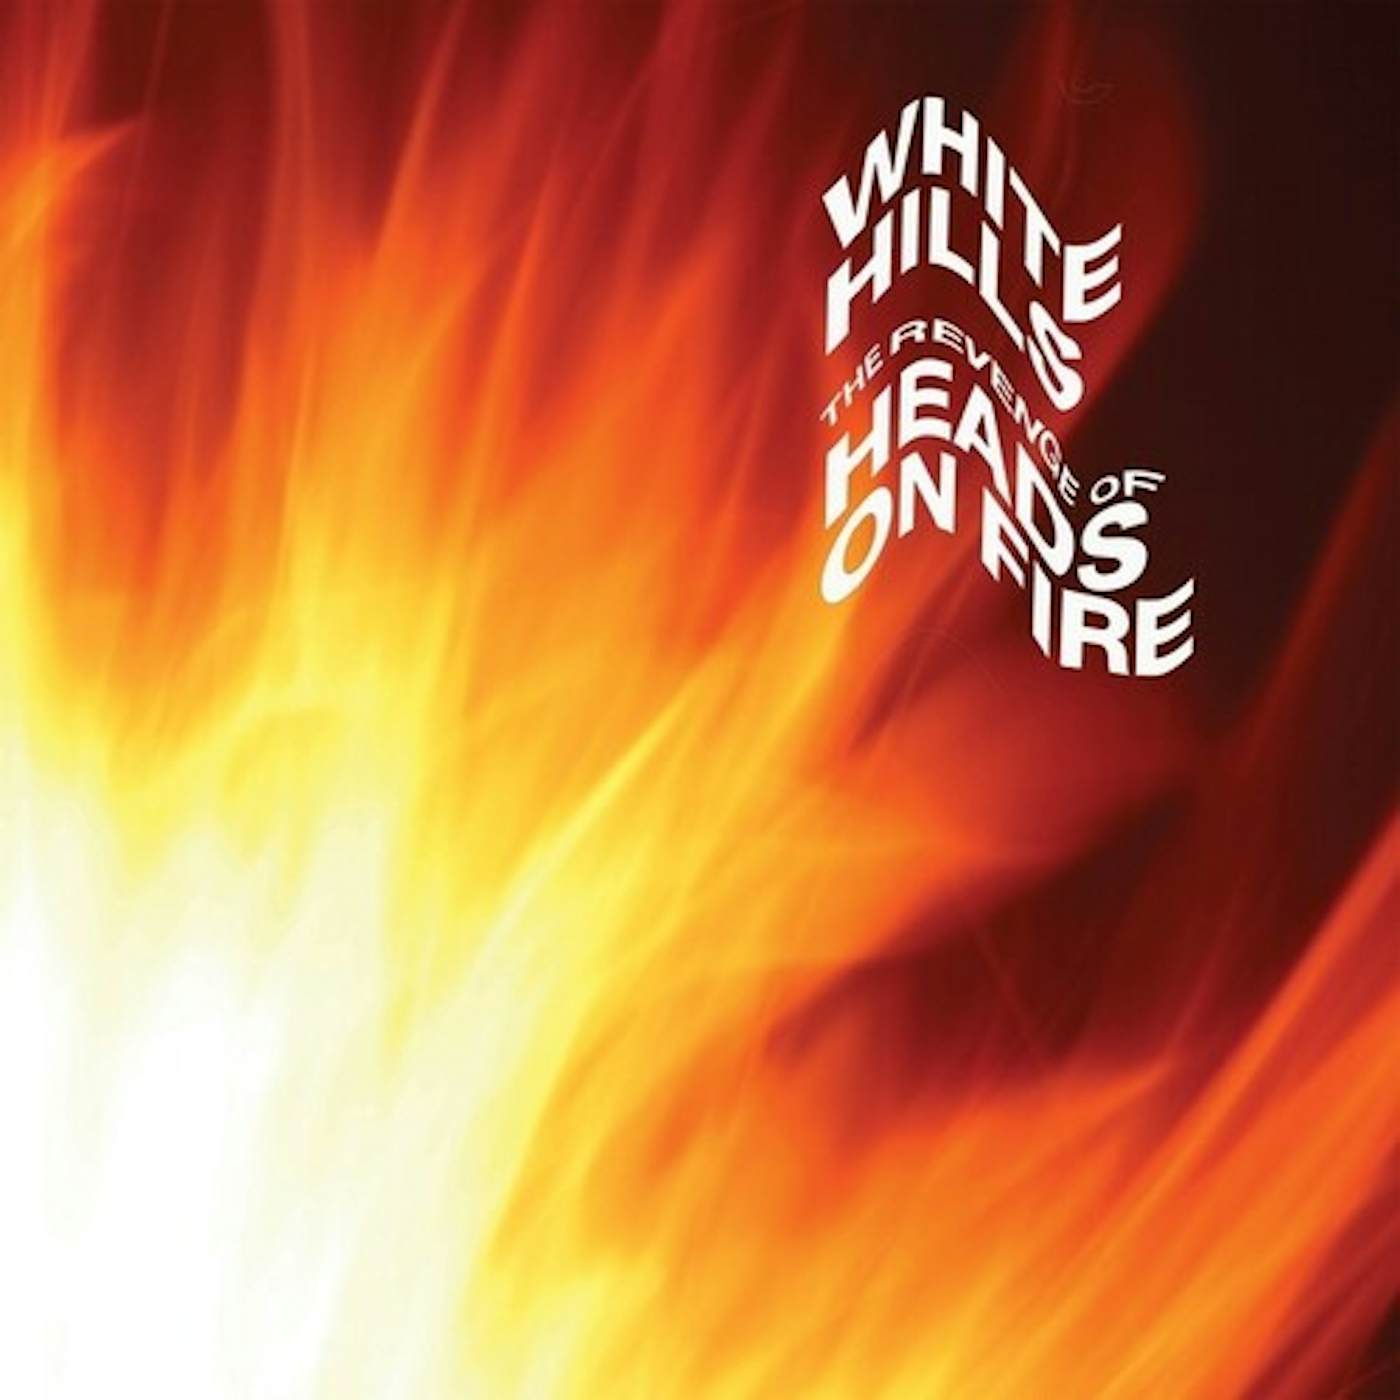 White Hills Revenge Of Heads On Fire vinyl record